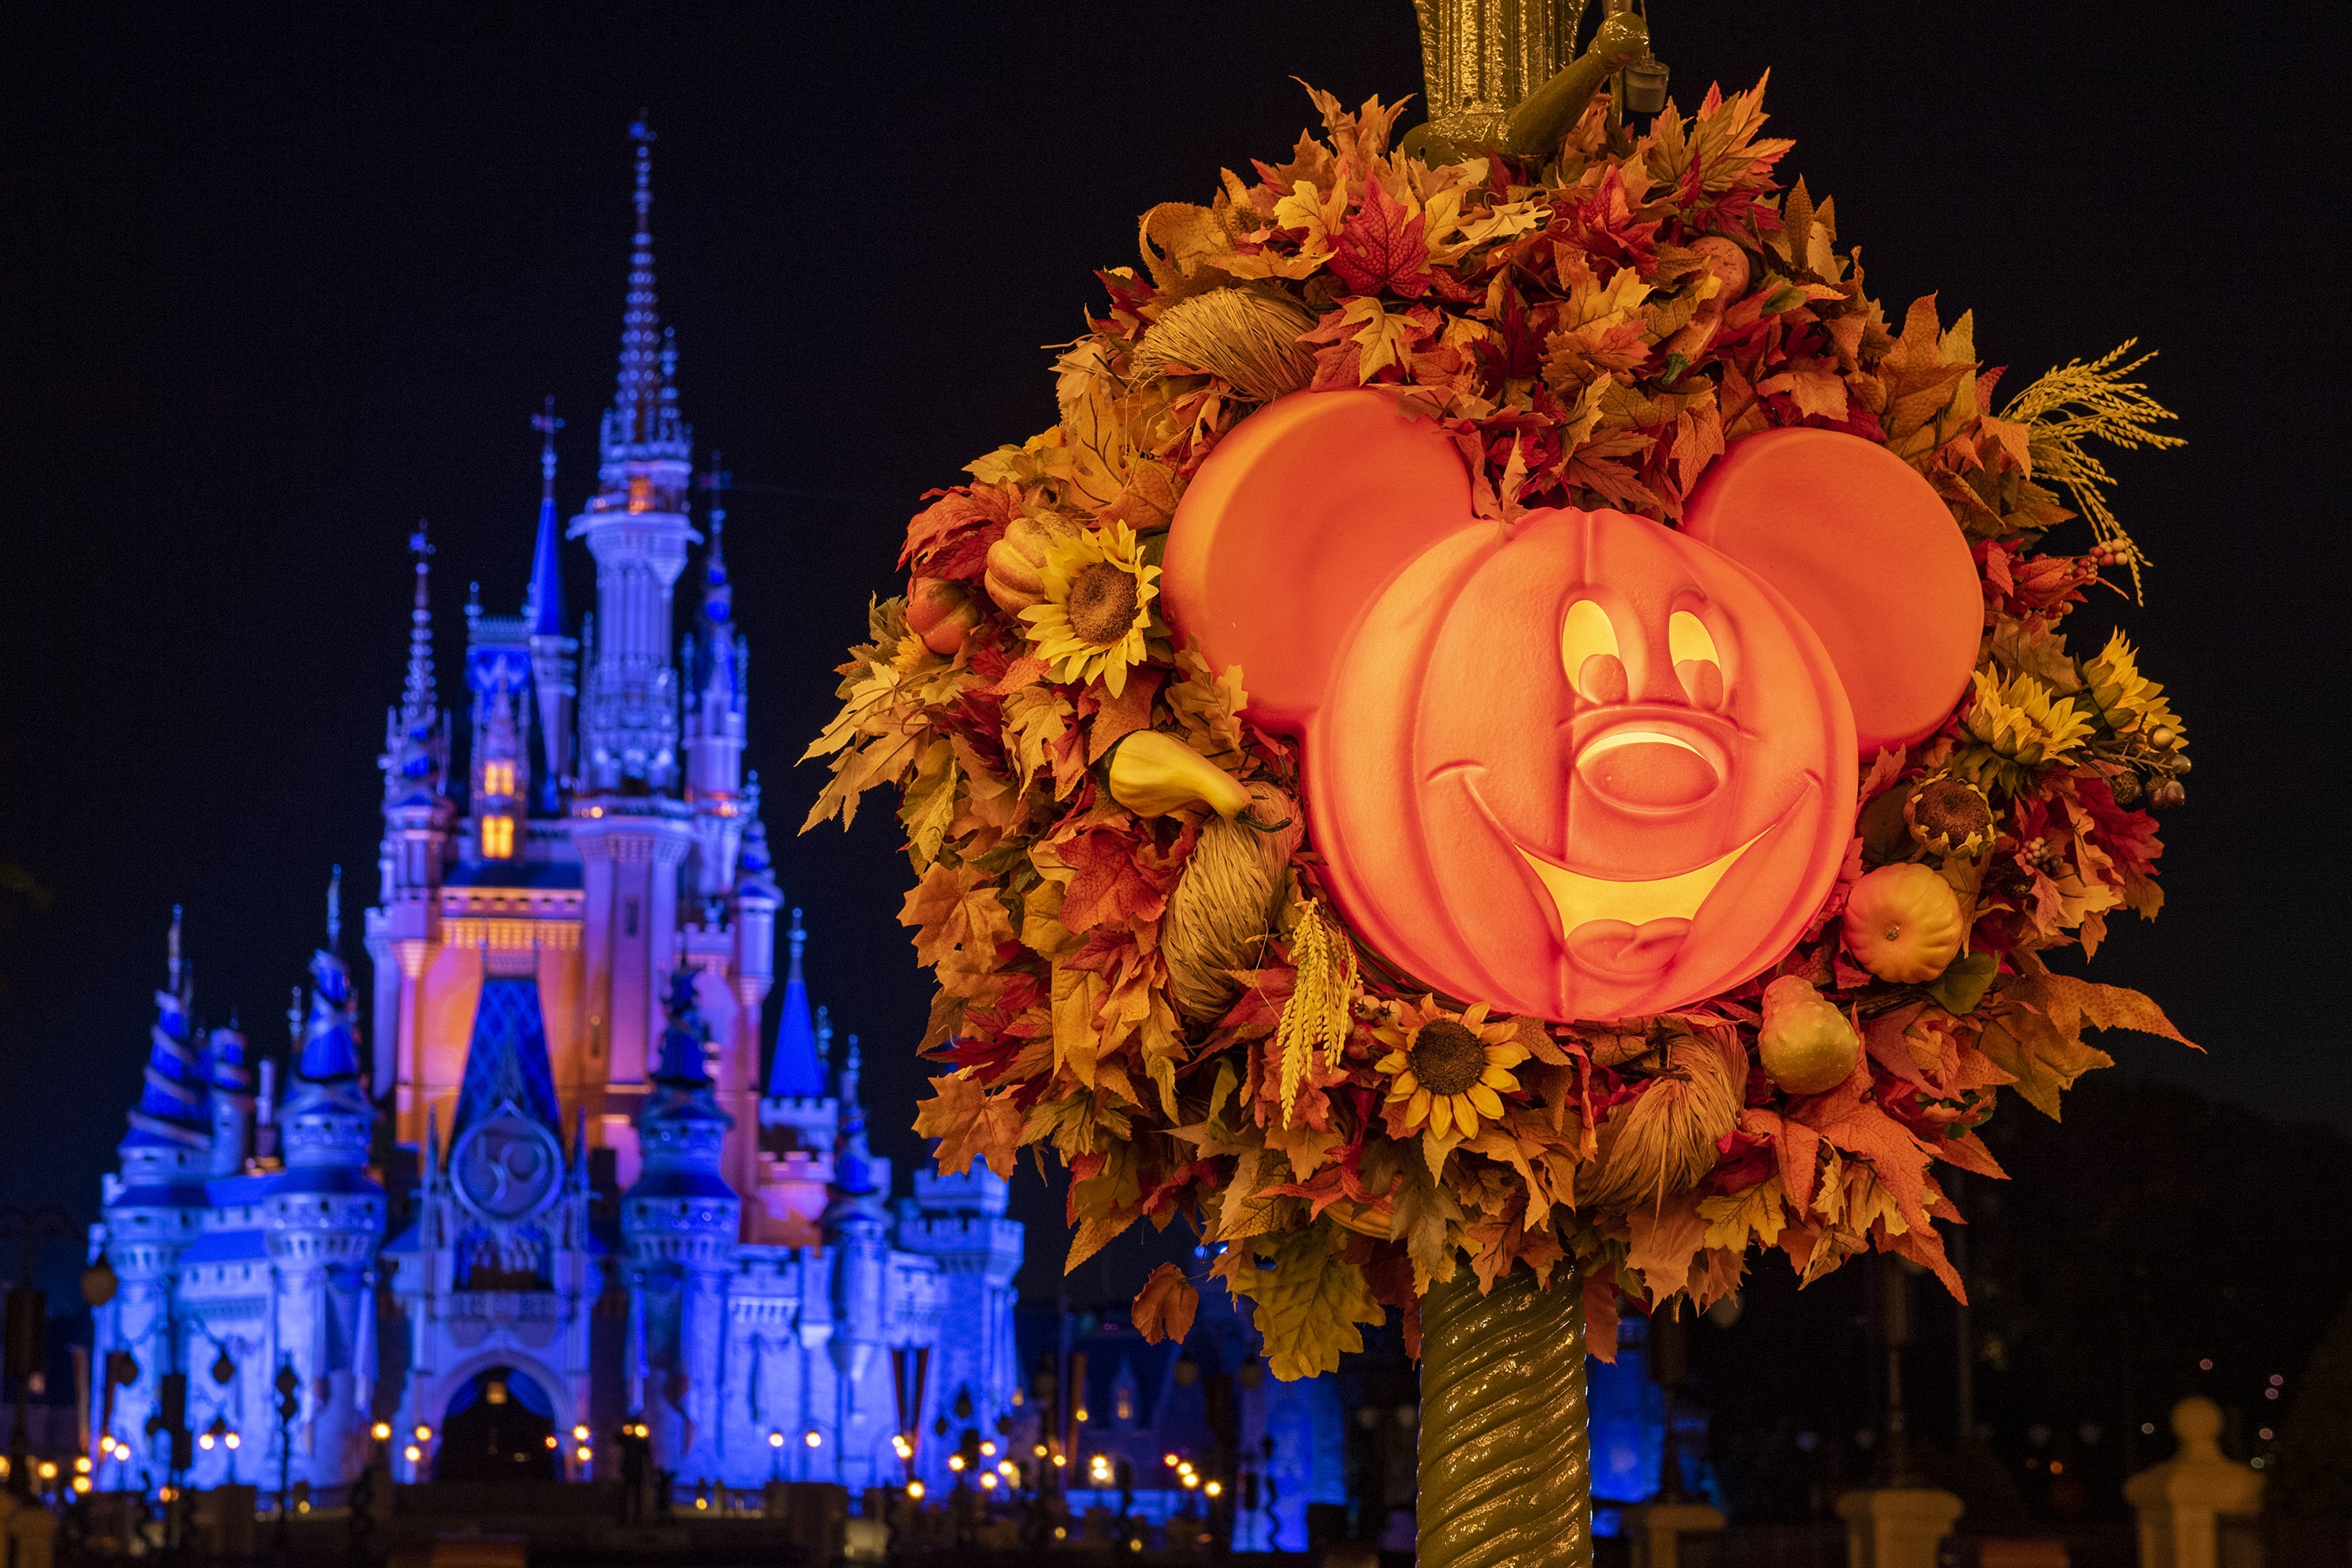 Where'd summer go? Halloween begins Tuesday at Walt Disney World